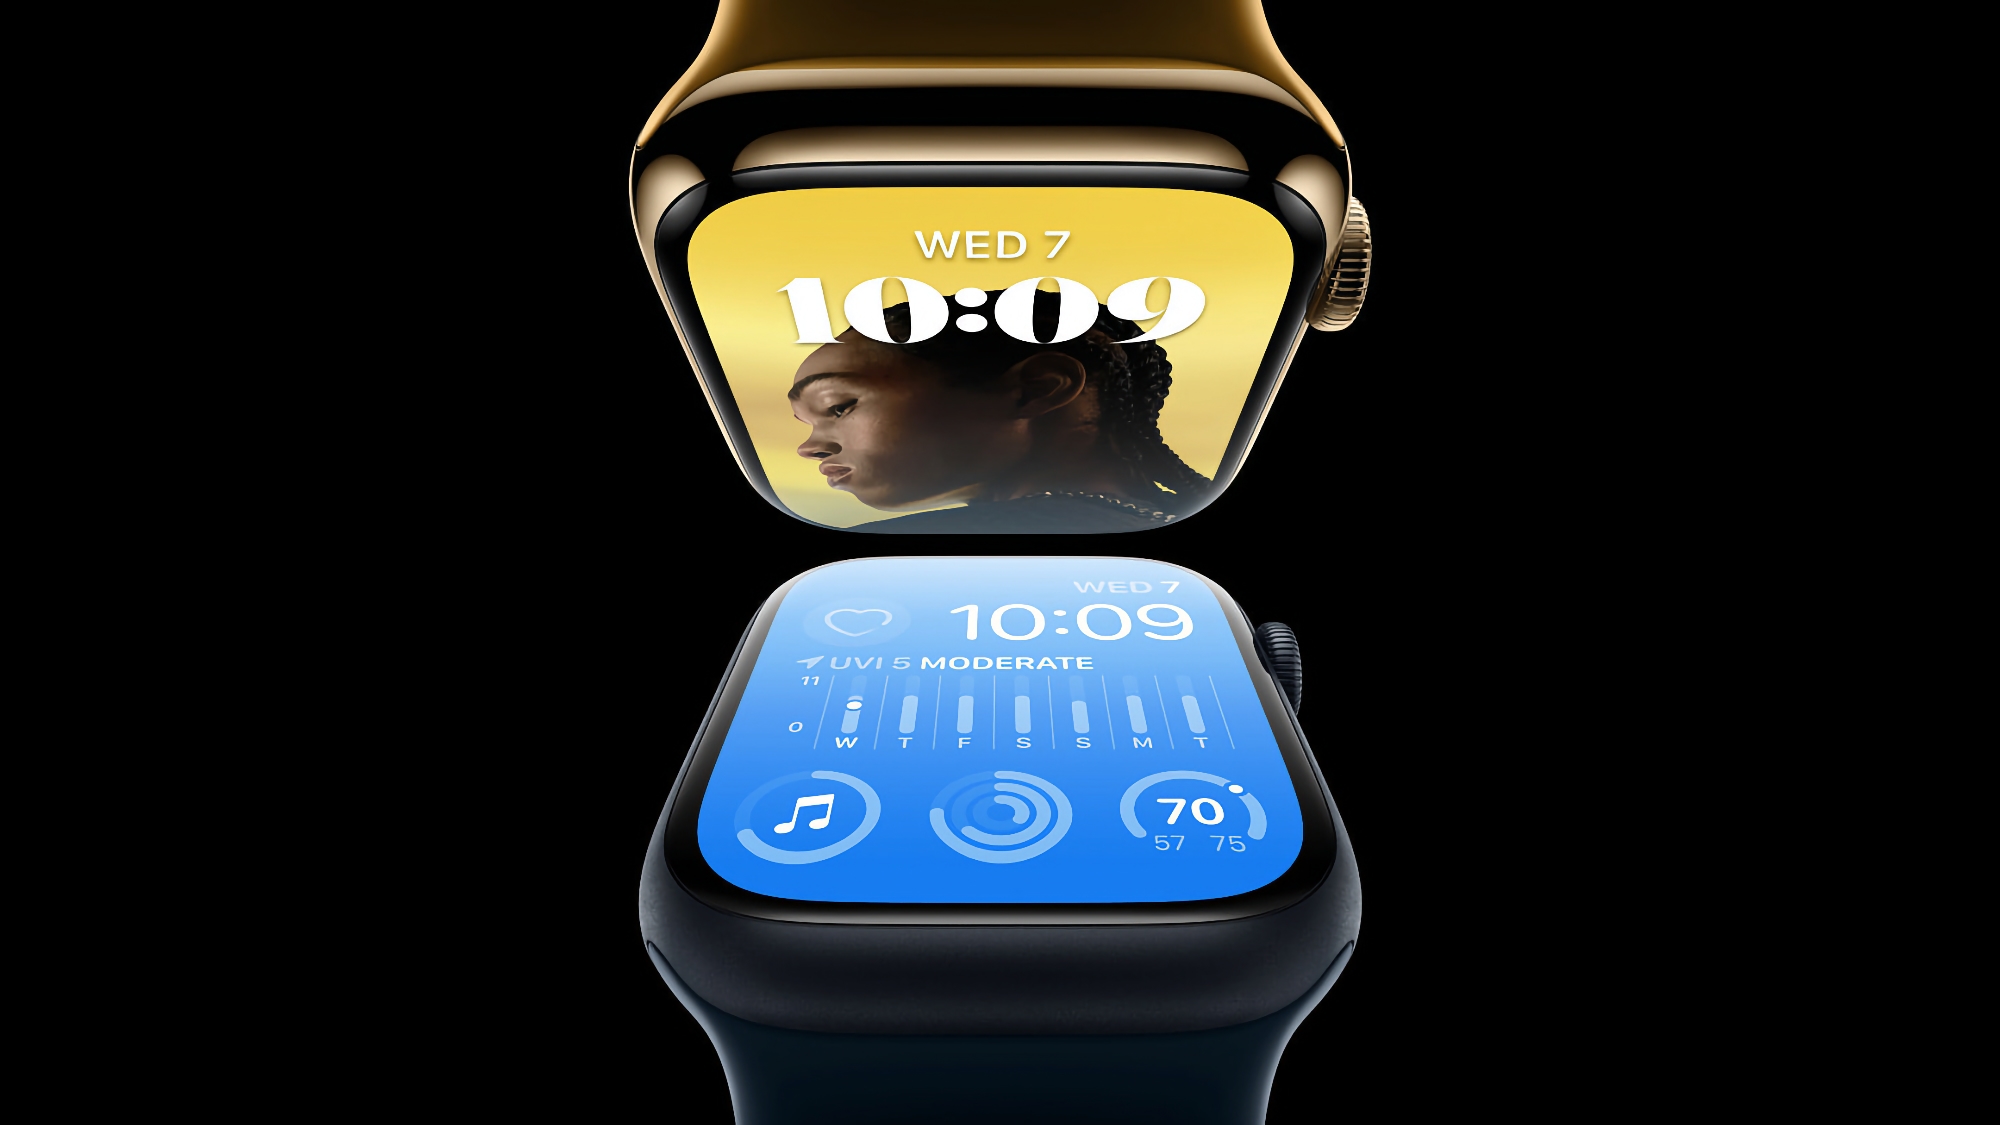 Rykter: Apple vil avduke Apple Watch X i 2024 eller 2025 med oppdatert design og en ny reimmontering